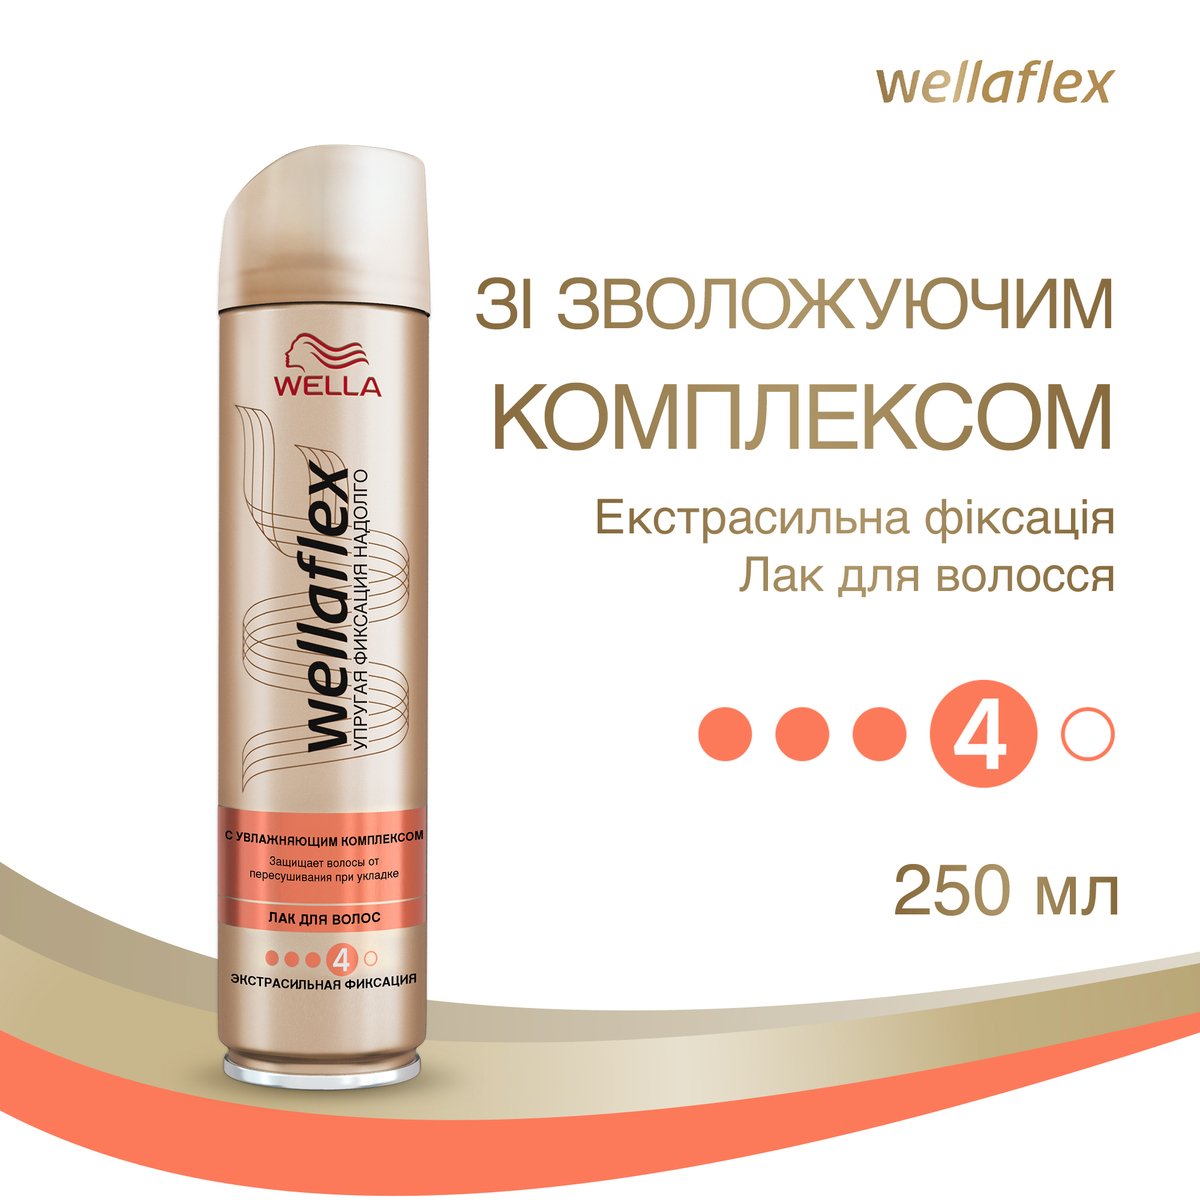 Лак для волос Wellaflex с увлажняющим комплексом, экстра сильная фиксация, 250 мл - фото 2